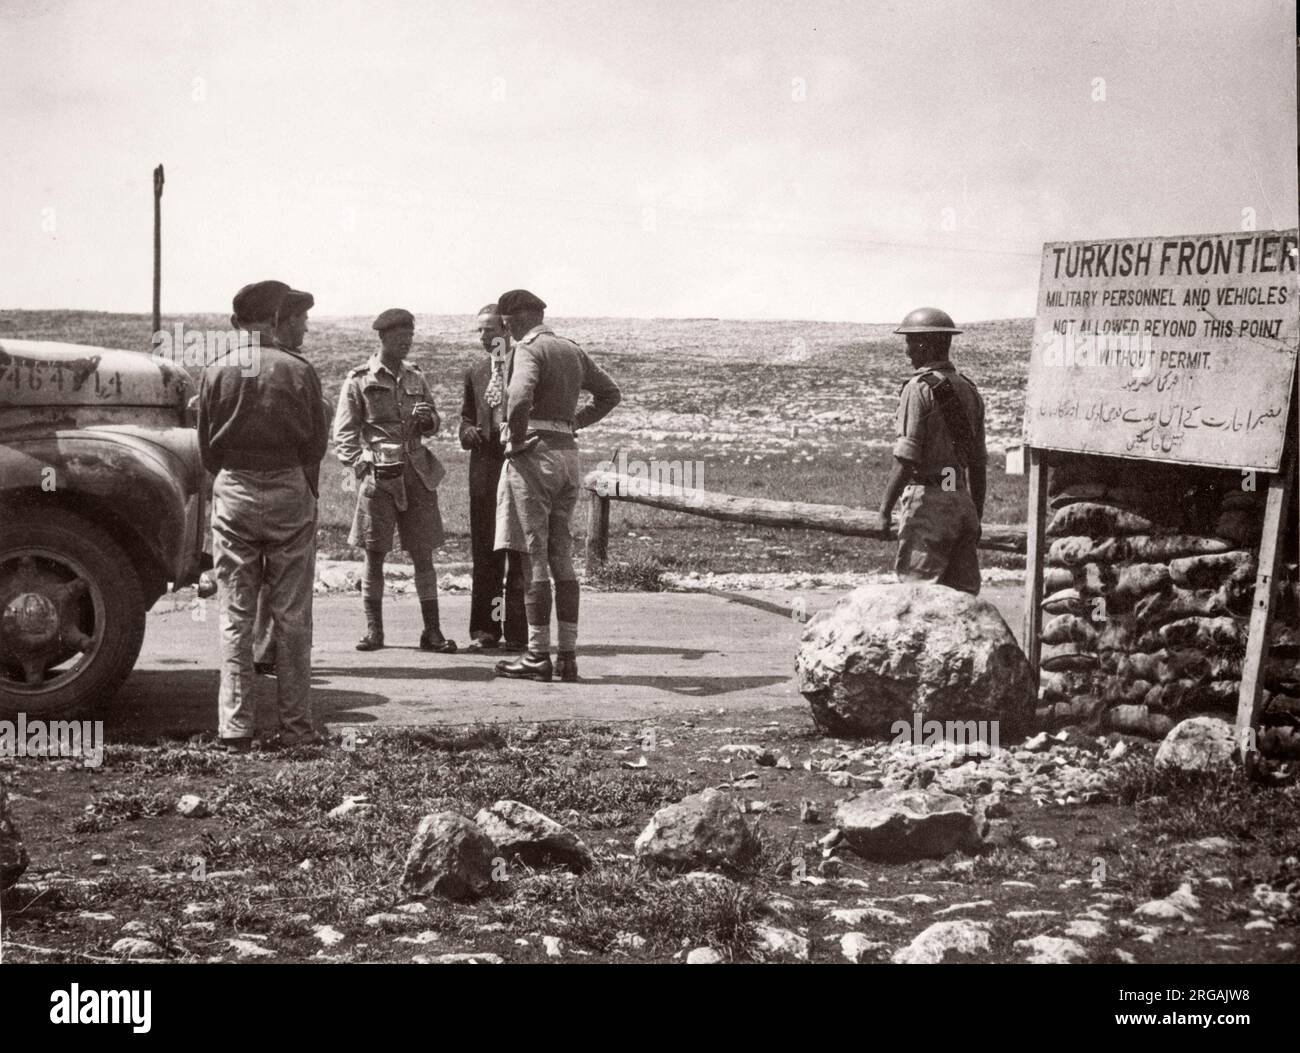 1943 - passage frontalier à Bab el Hawa entre la Syrie et la Turquie Photographie d'un officier de recrutement de l'armée britannique stationné en Afrique de l'est et au Moyen-Orient pendant la Seconde Guerre mondiale Banque D'Images